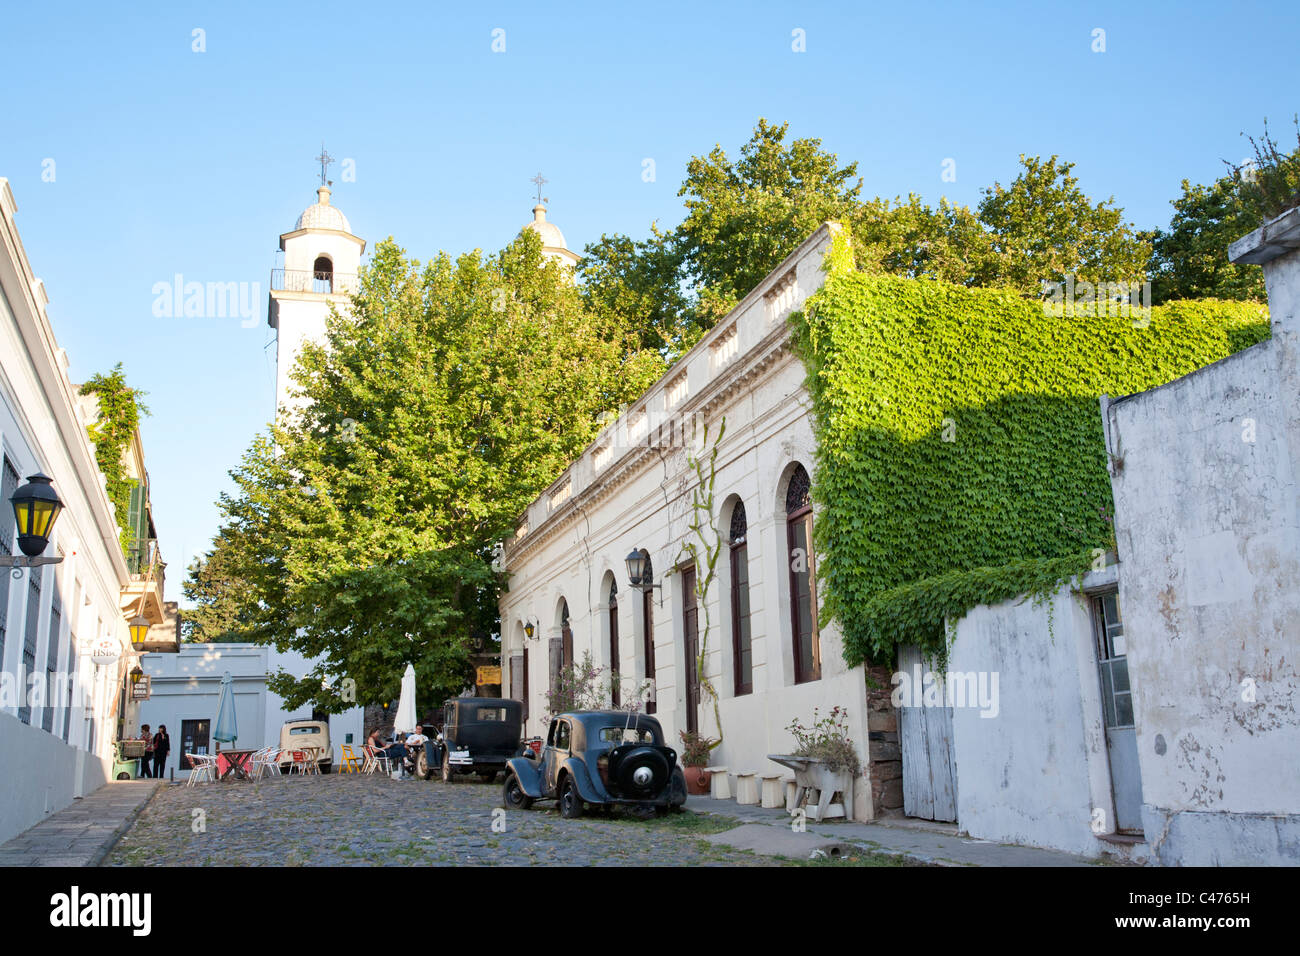 La Iglesia Matriz, Barrio Historico, Colonia del Sacramento, Uruguay Foto Stock